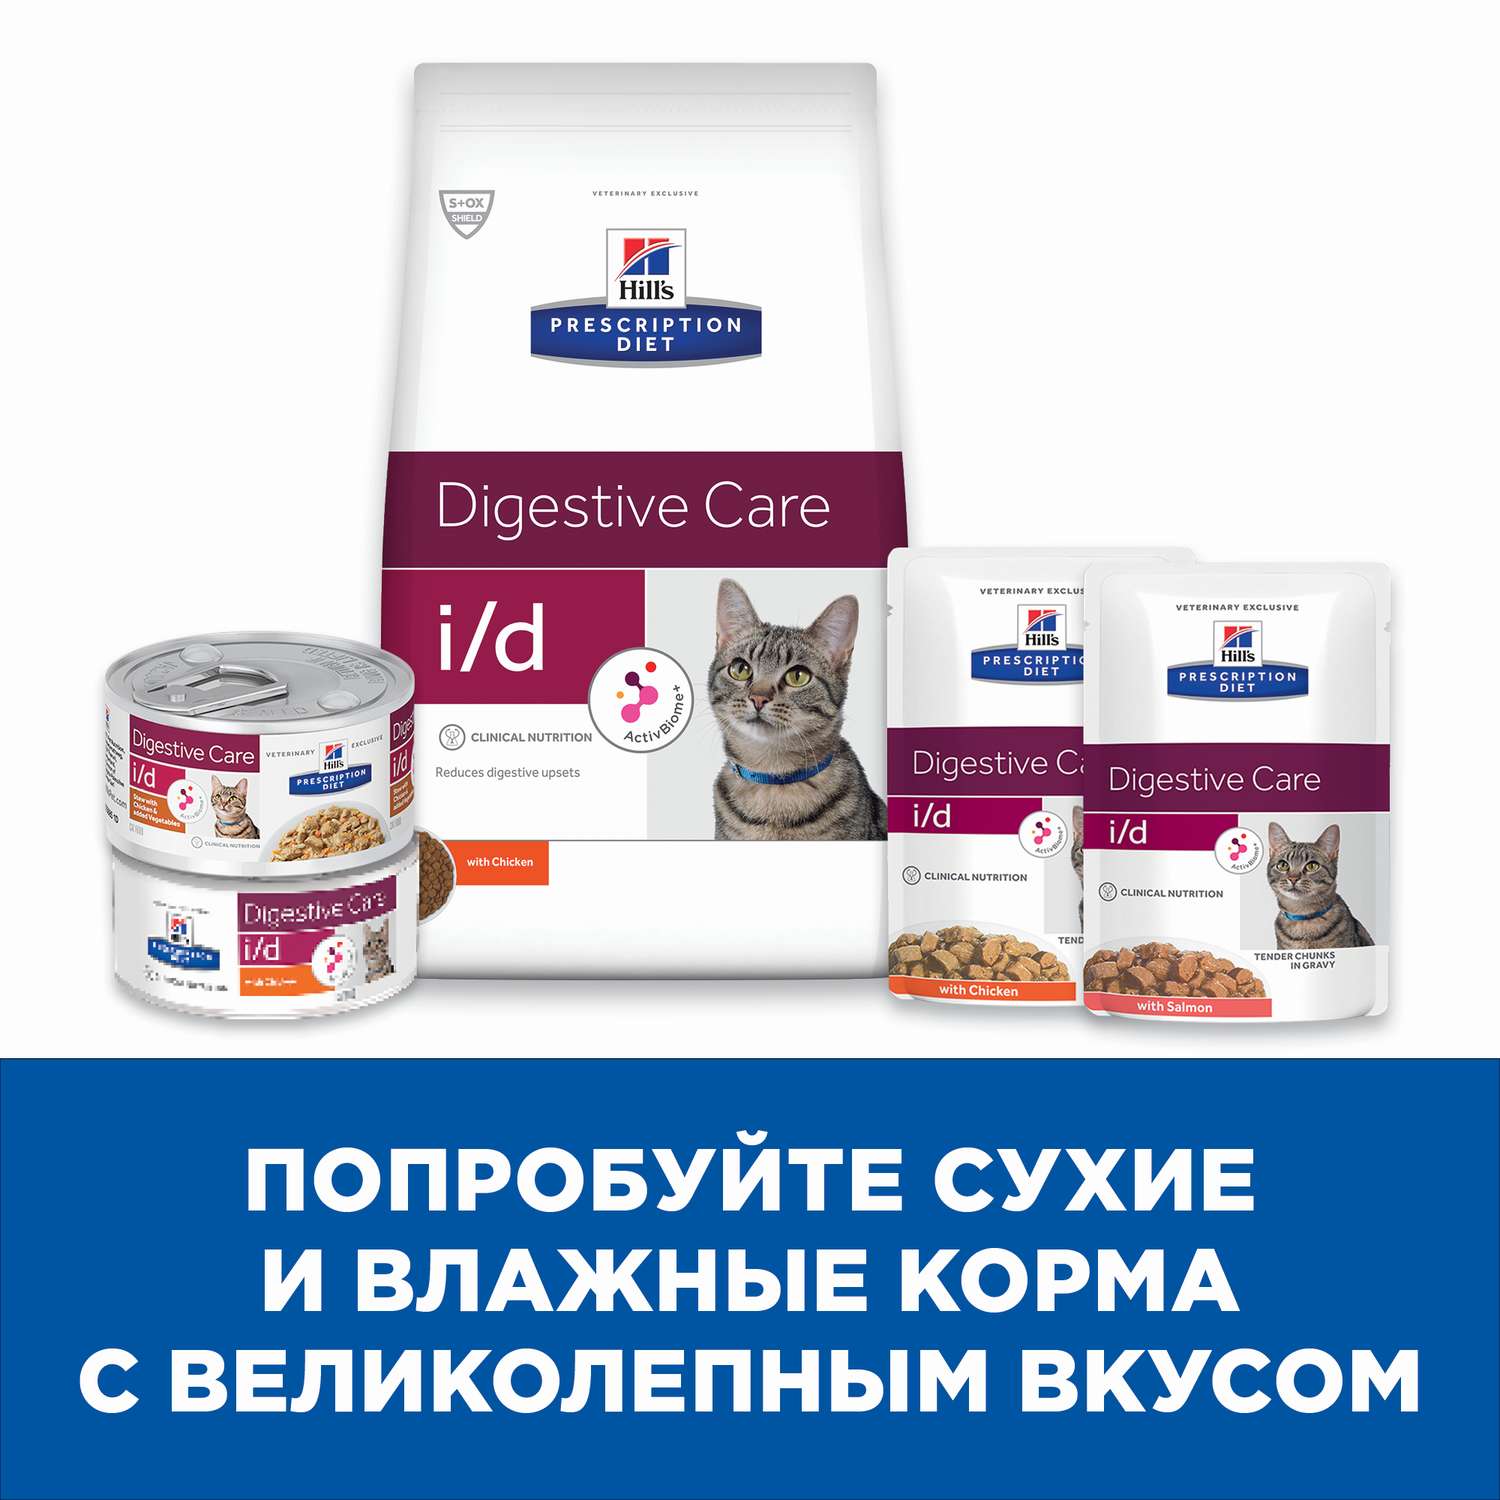 Корм для кошек HILLS 5кг Prescription Diet i/d Digestive Care диетический при расстройствах пищеварения ЖКТ с курицей - фото 5